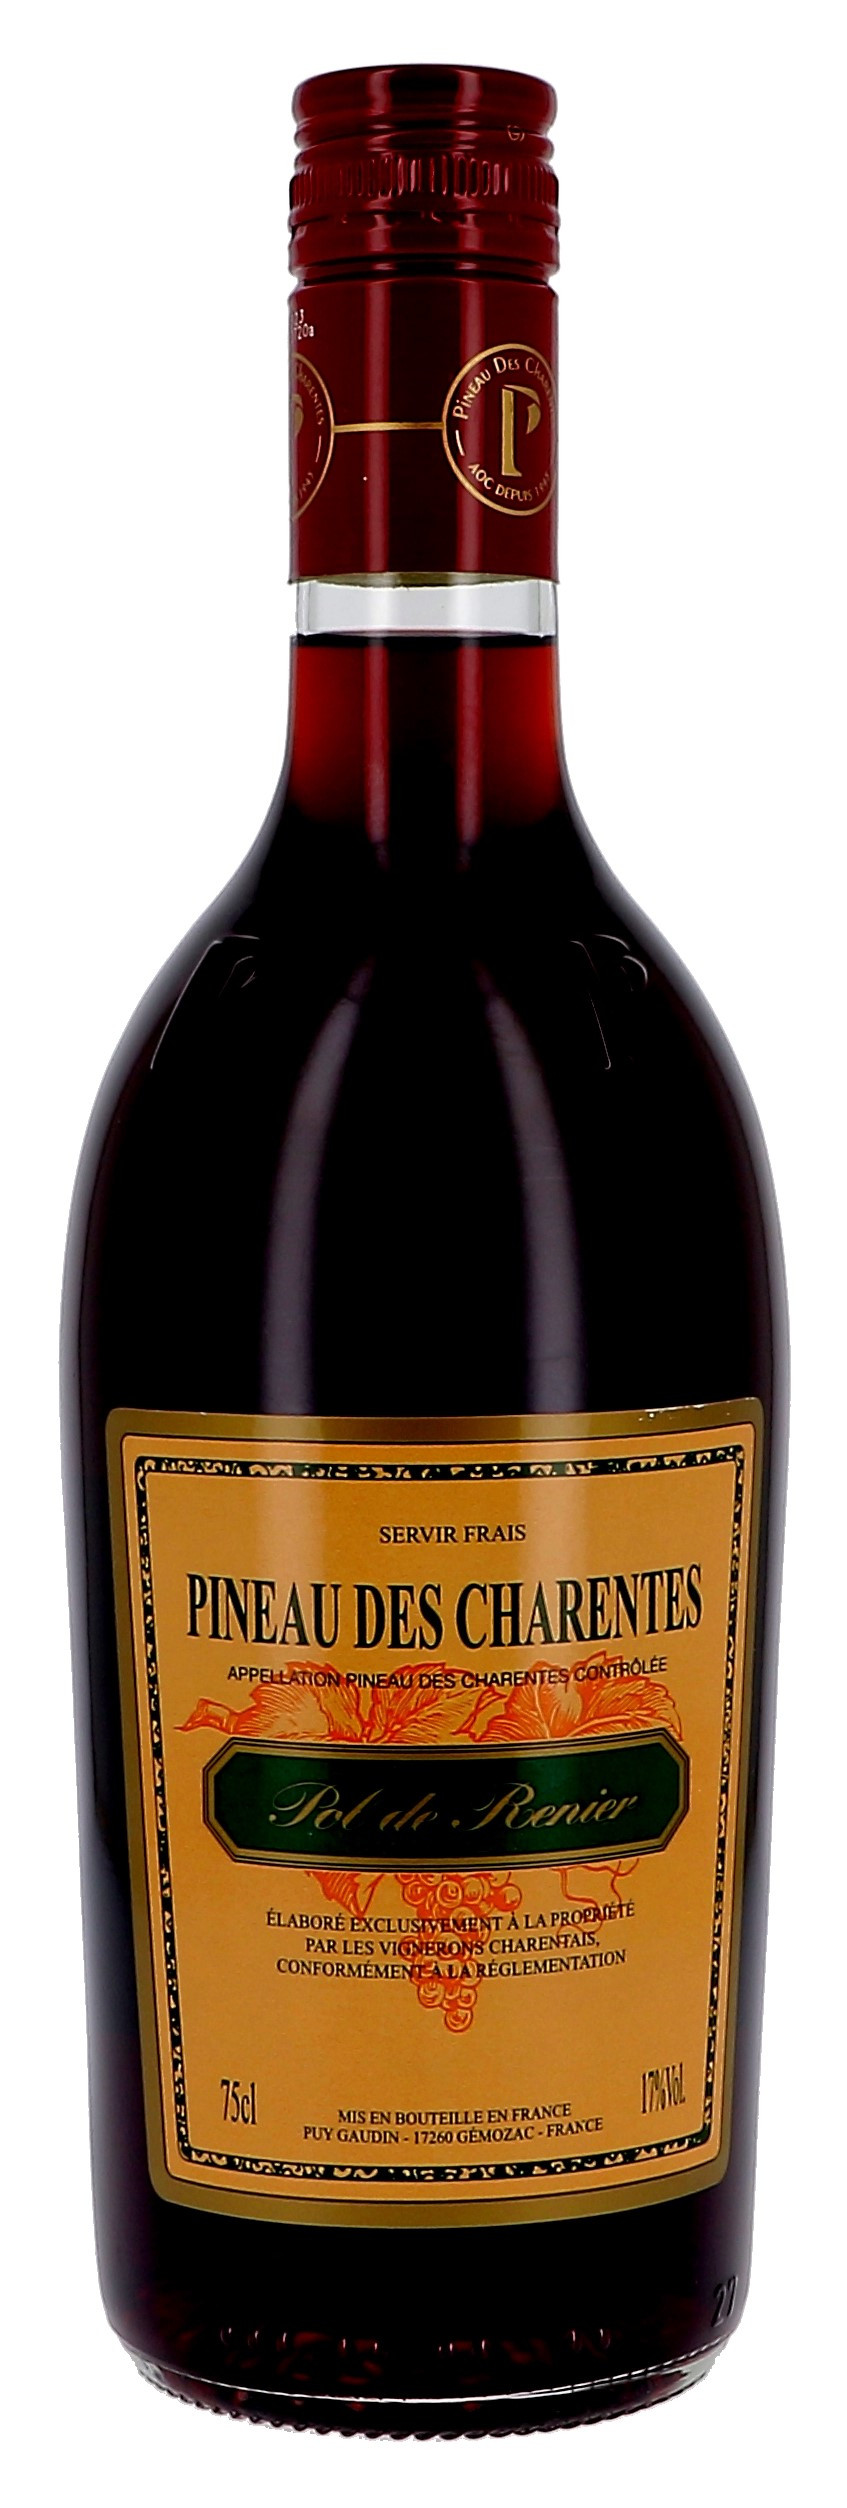 Pineau des Charentes Pol de Renier rouge 75cl 17% (Pineau de charentes)